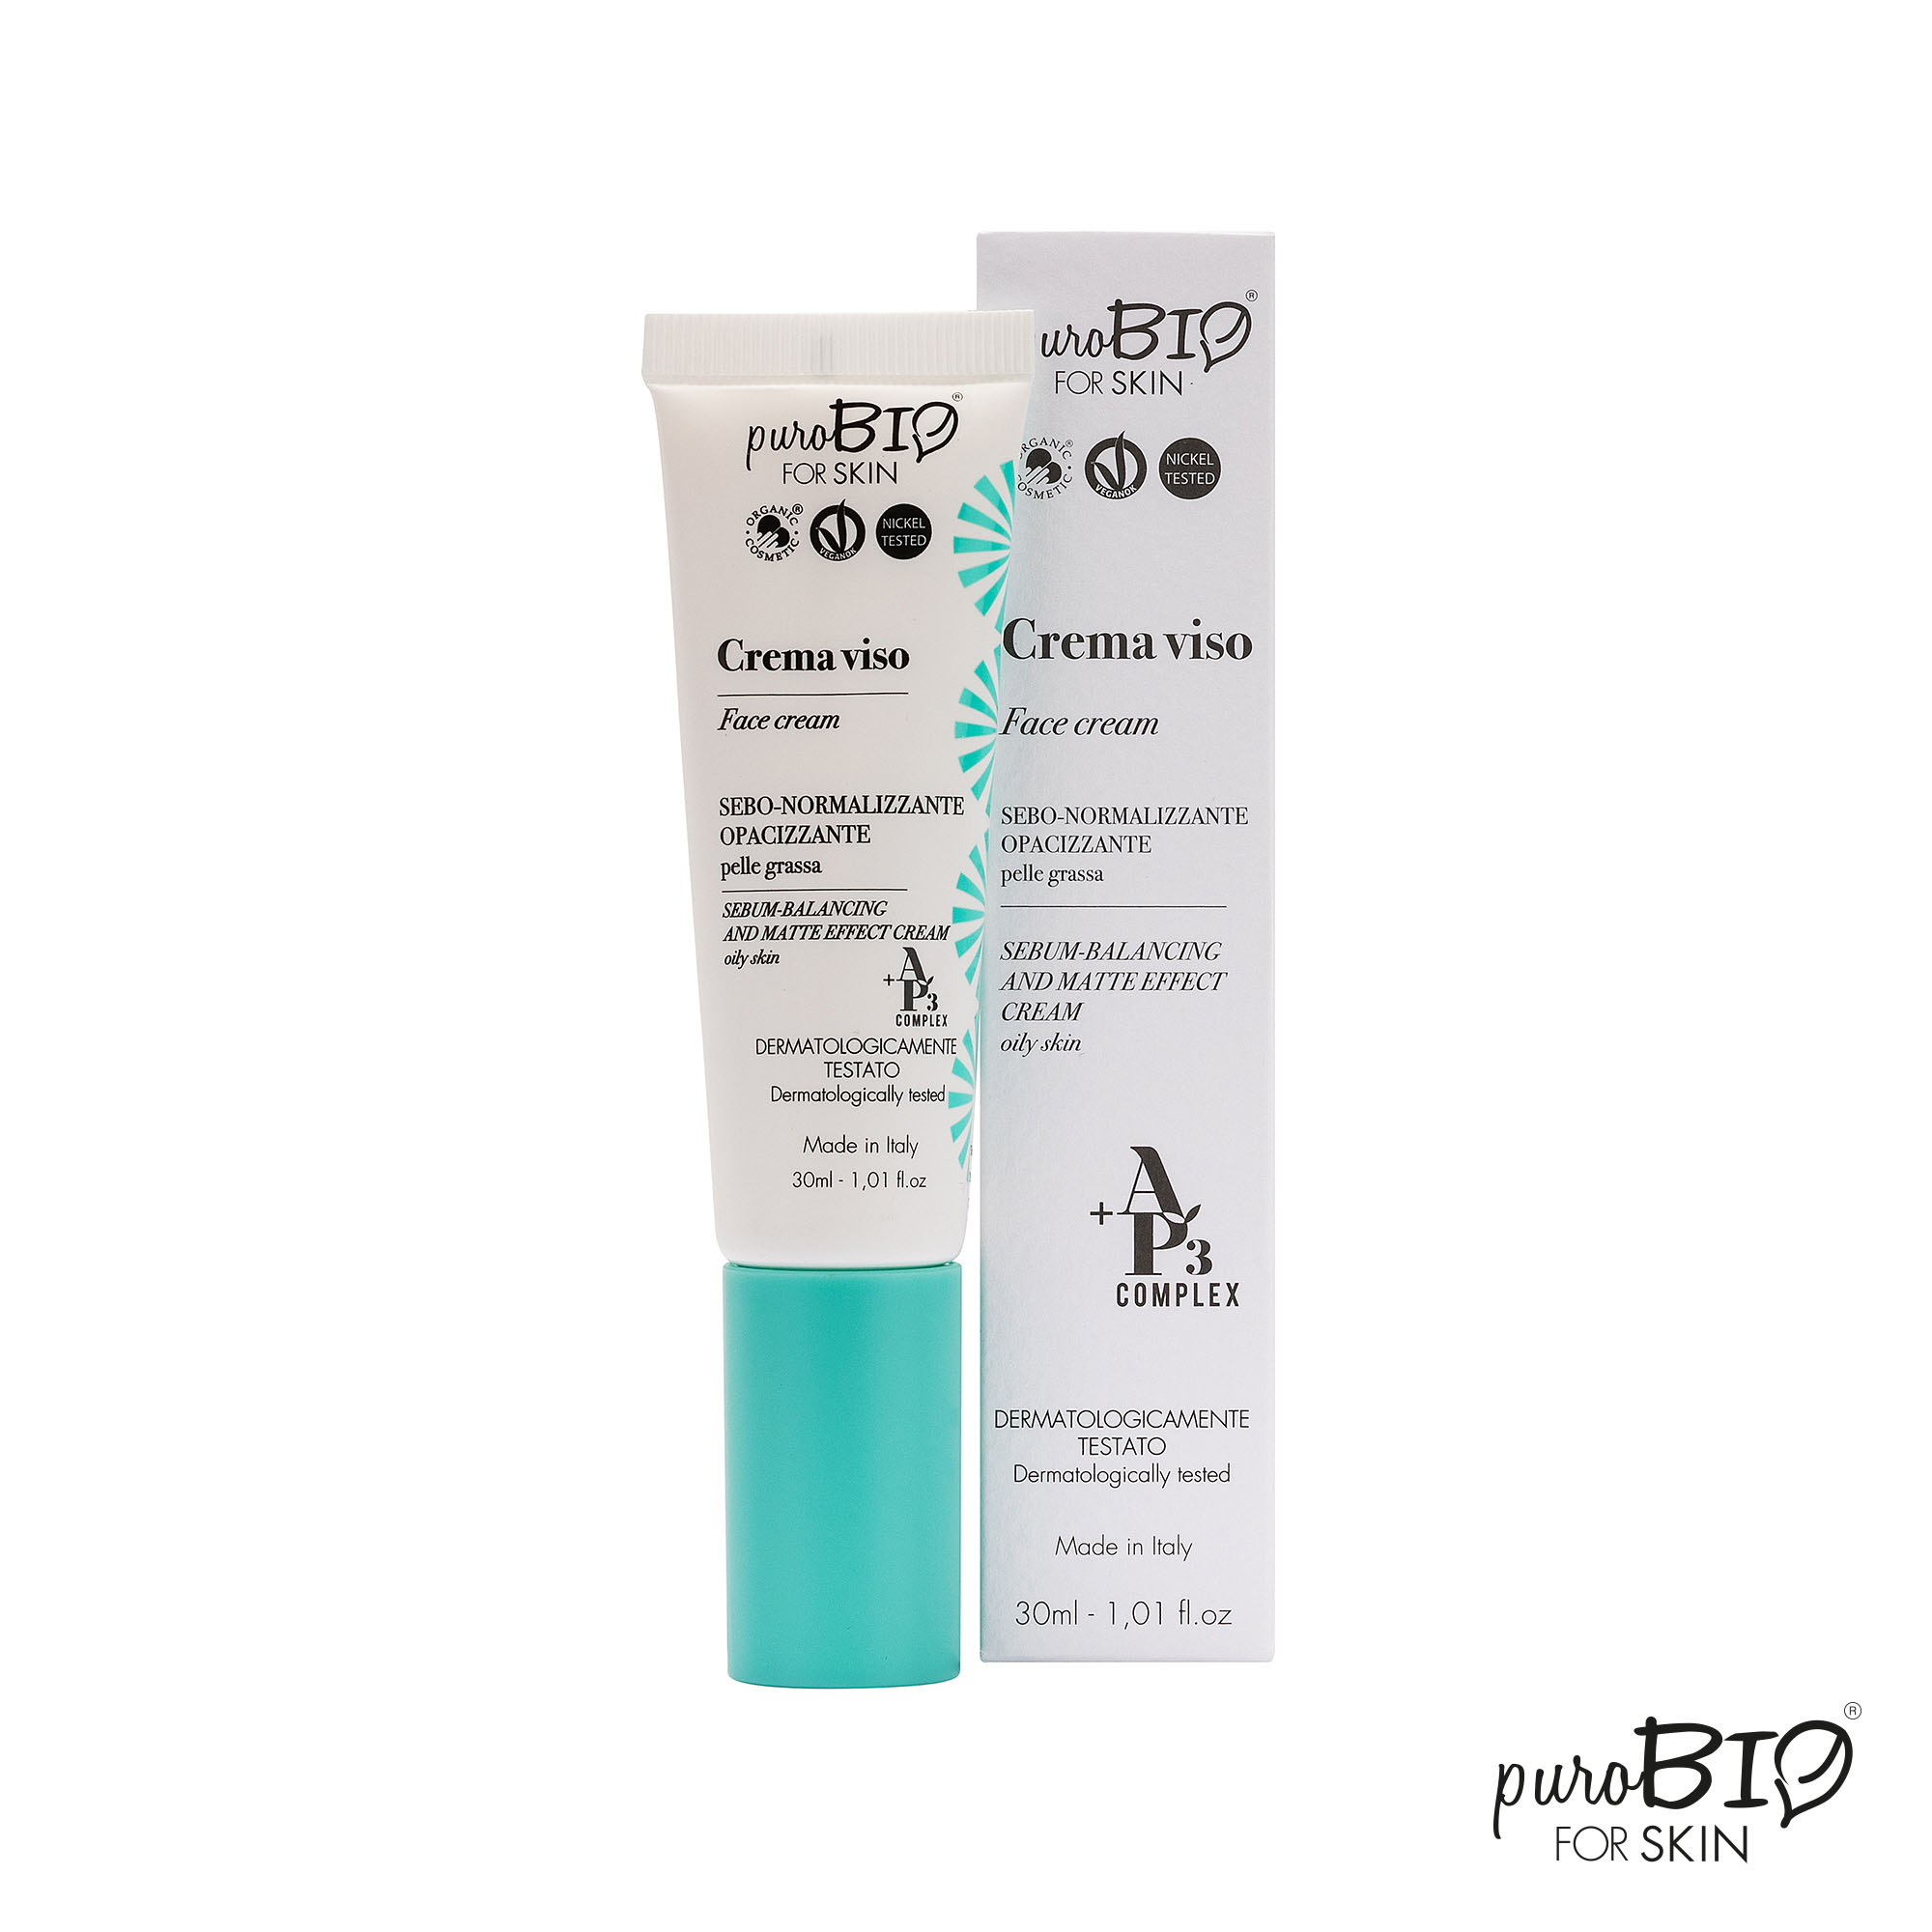 Crema viso sebo-normalizzante Purobio For Skin